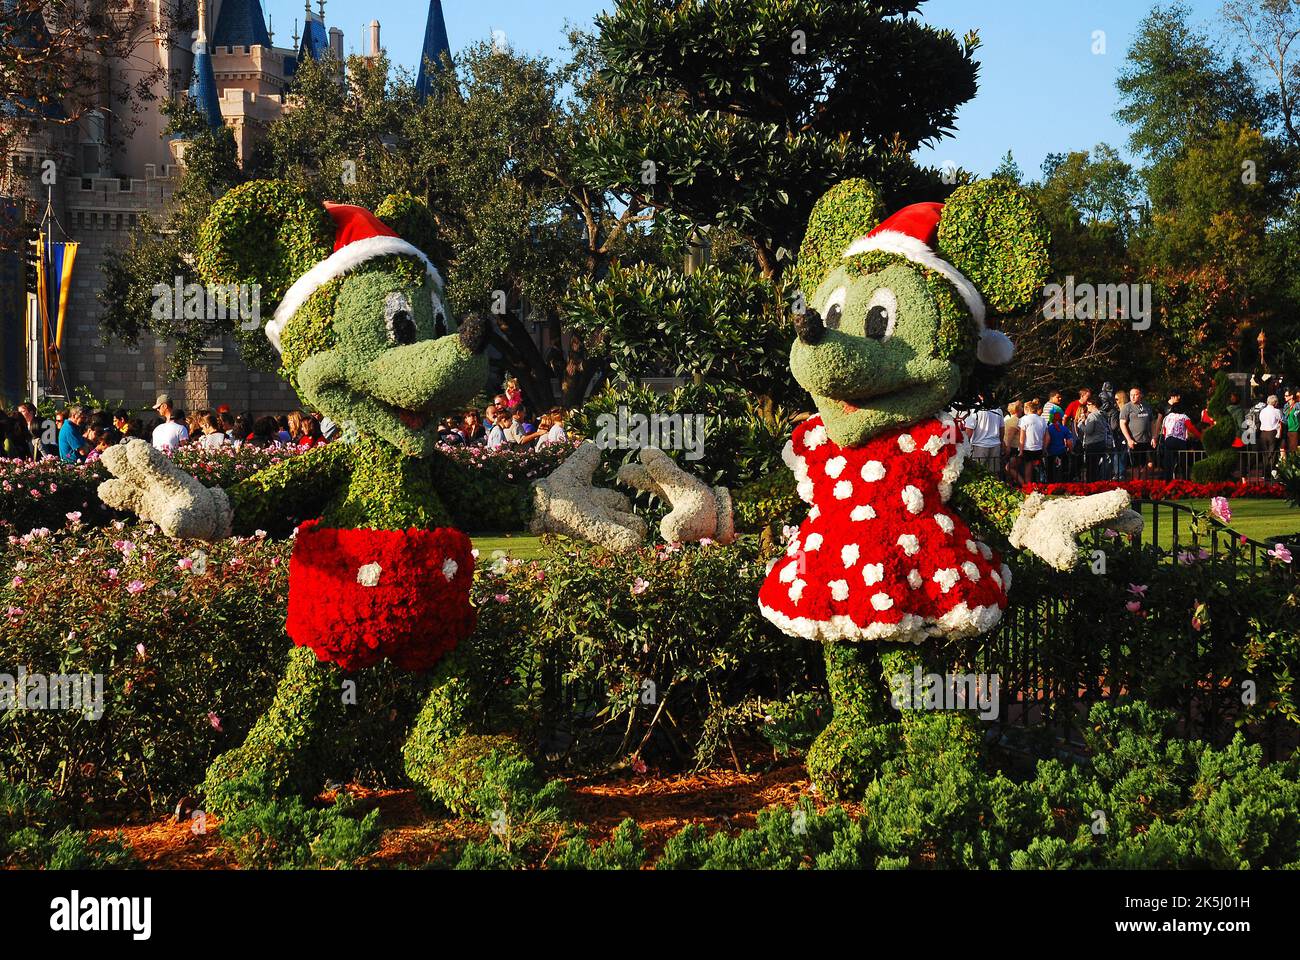 Les buissons et les arbustes sont coupés et conçus comme Mickey Mouse et Minnie Mouse, habillés lors de la fête de Noël à Walt Disney World Banque D'Images